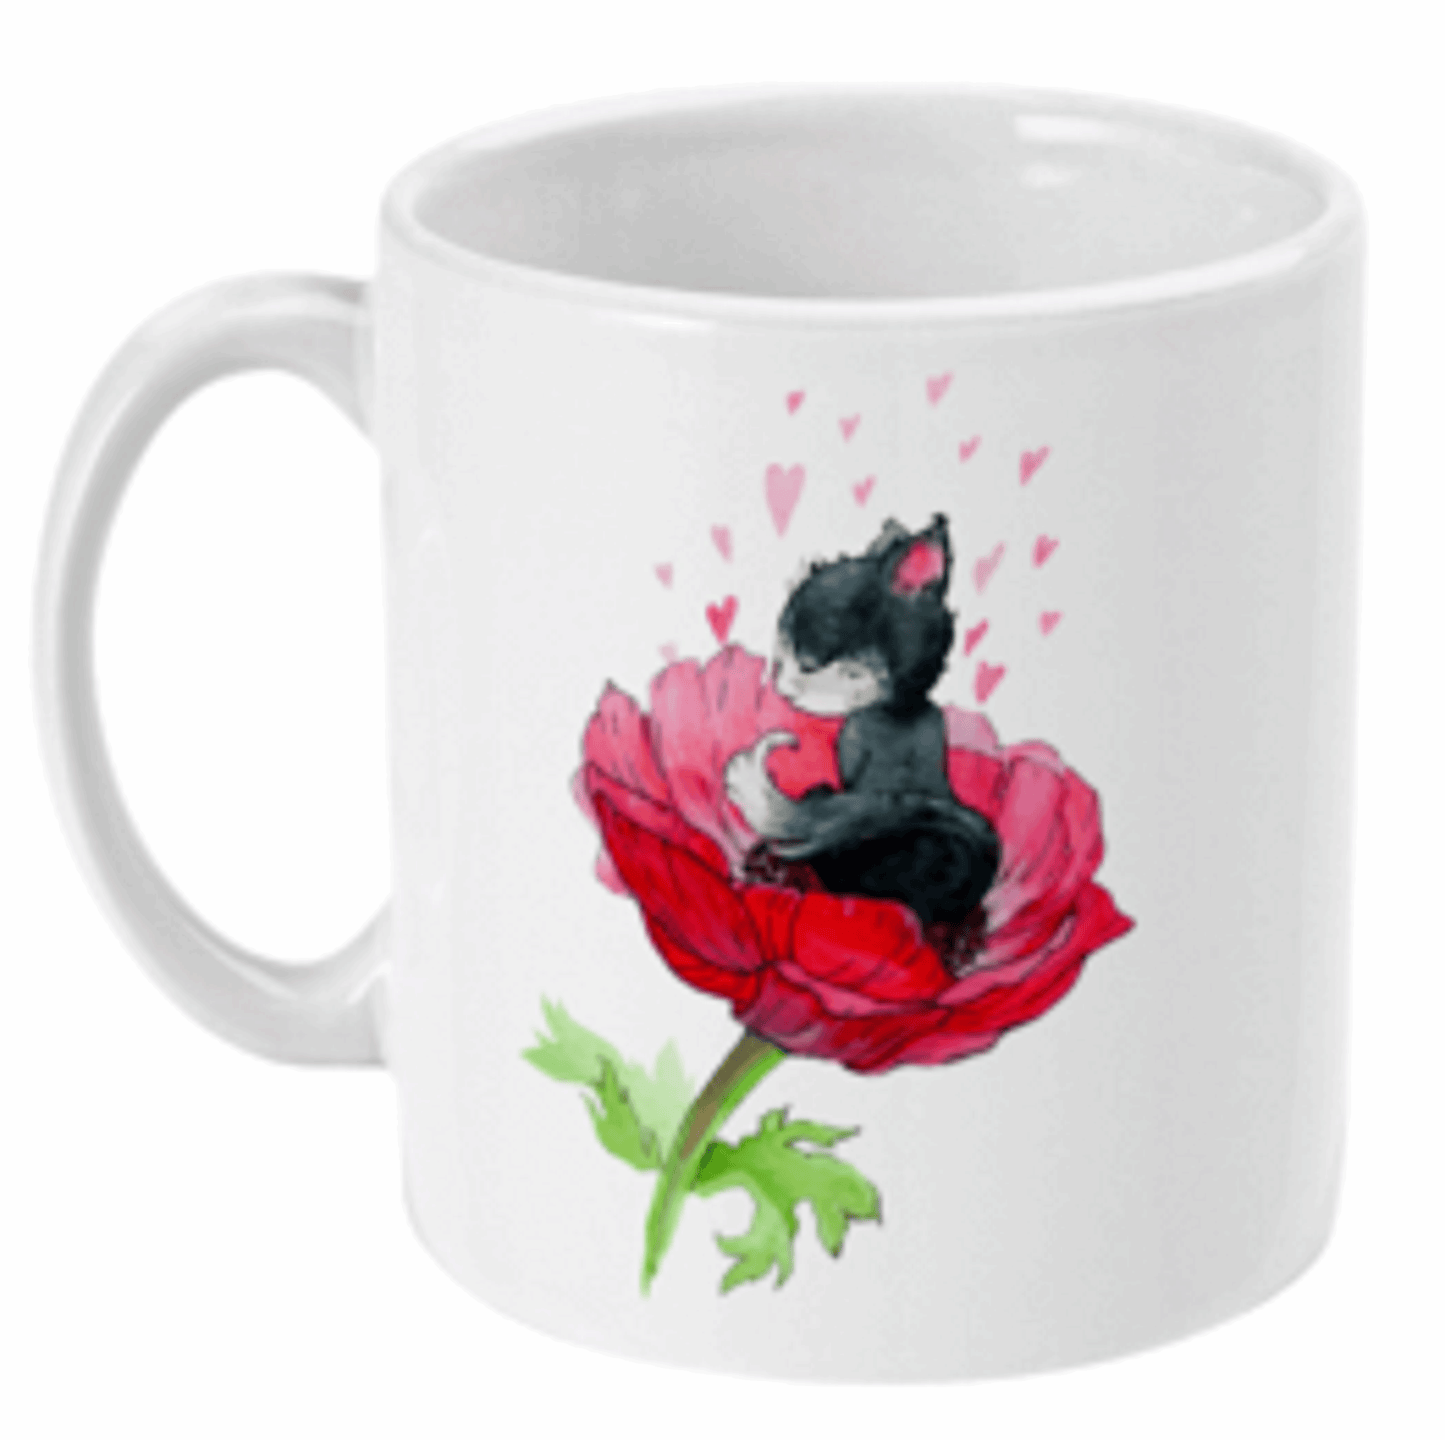  Cat Sat in a Poppy Flower Coffee Mug by Free Spirit Accessories sold by Free Spirit Accessories